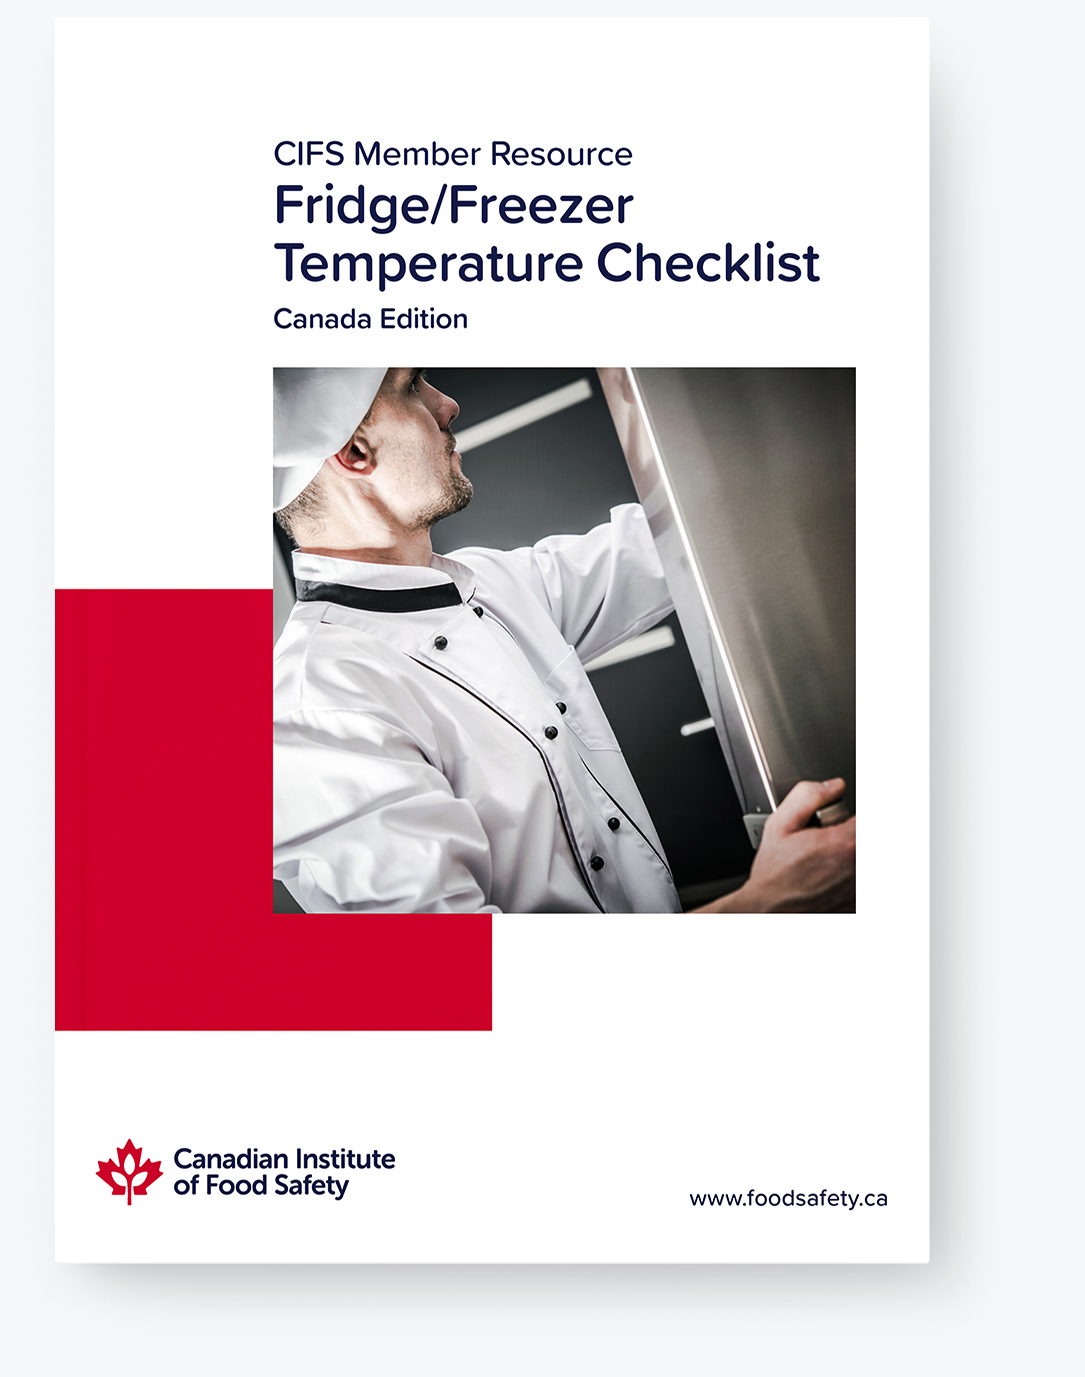 Fridge / Freezer Temperature Checklist